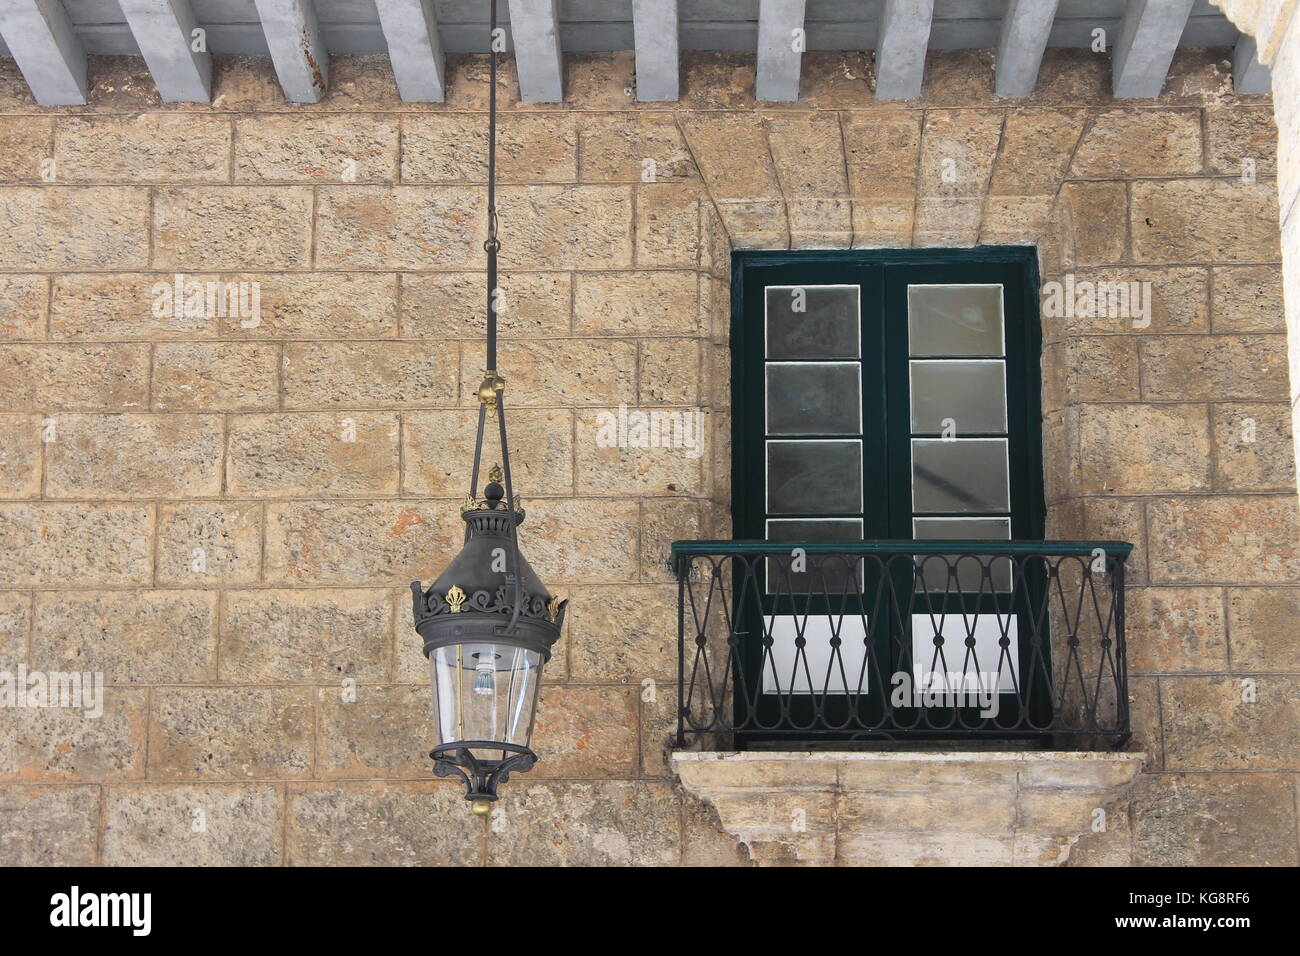 Ouverture des portes à un balcon romantique dans un mur de pierre dans un ancien bâtiment de style espagnol, La Havane, Cuba. Une lanterne est suspendu au plafond. Banque D'Images